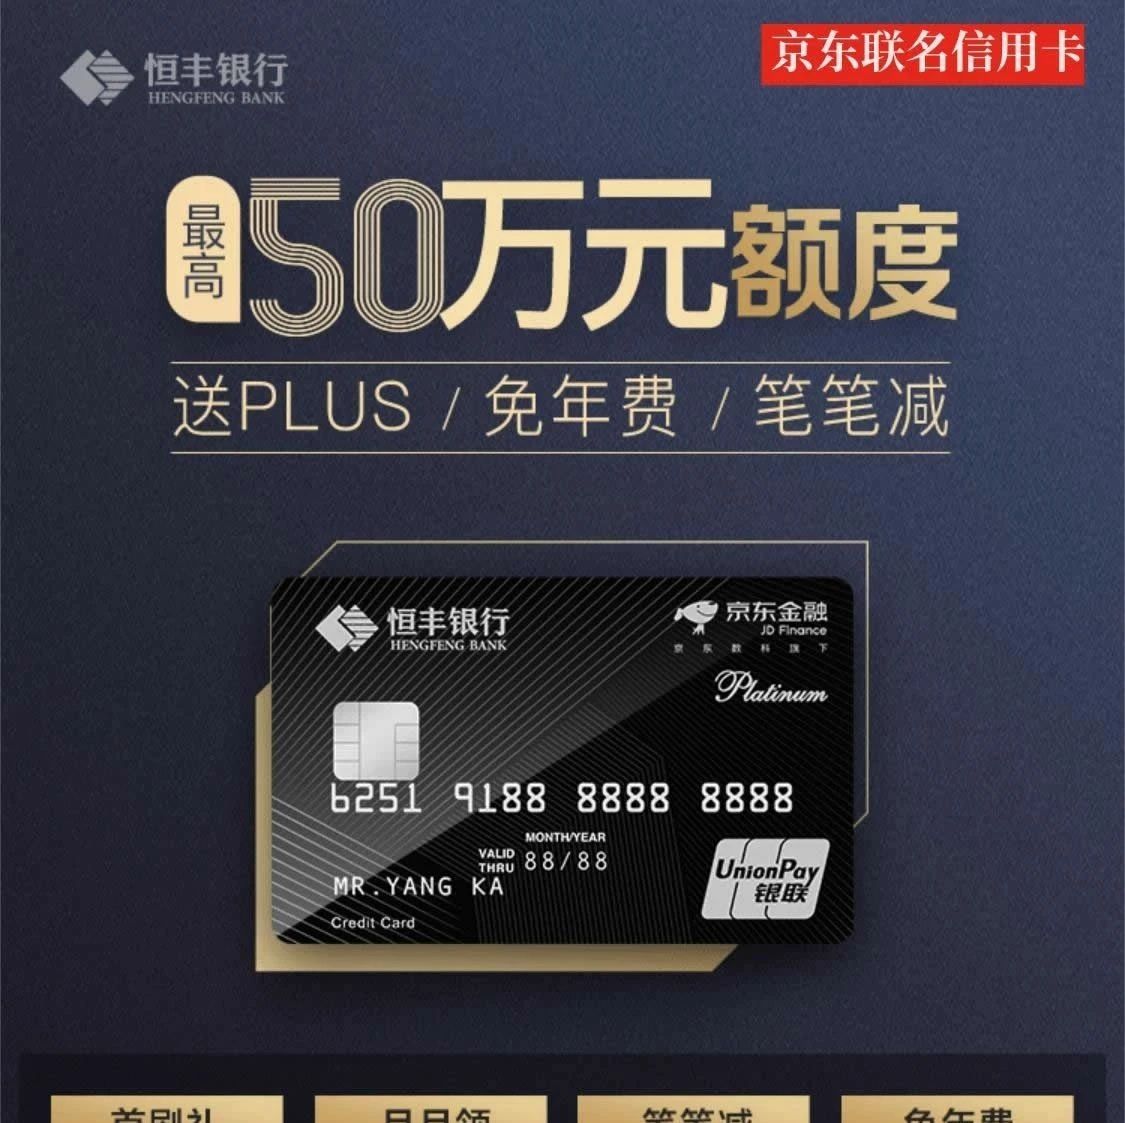 「恒丰银行信用卡」申请中心,最高50万!